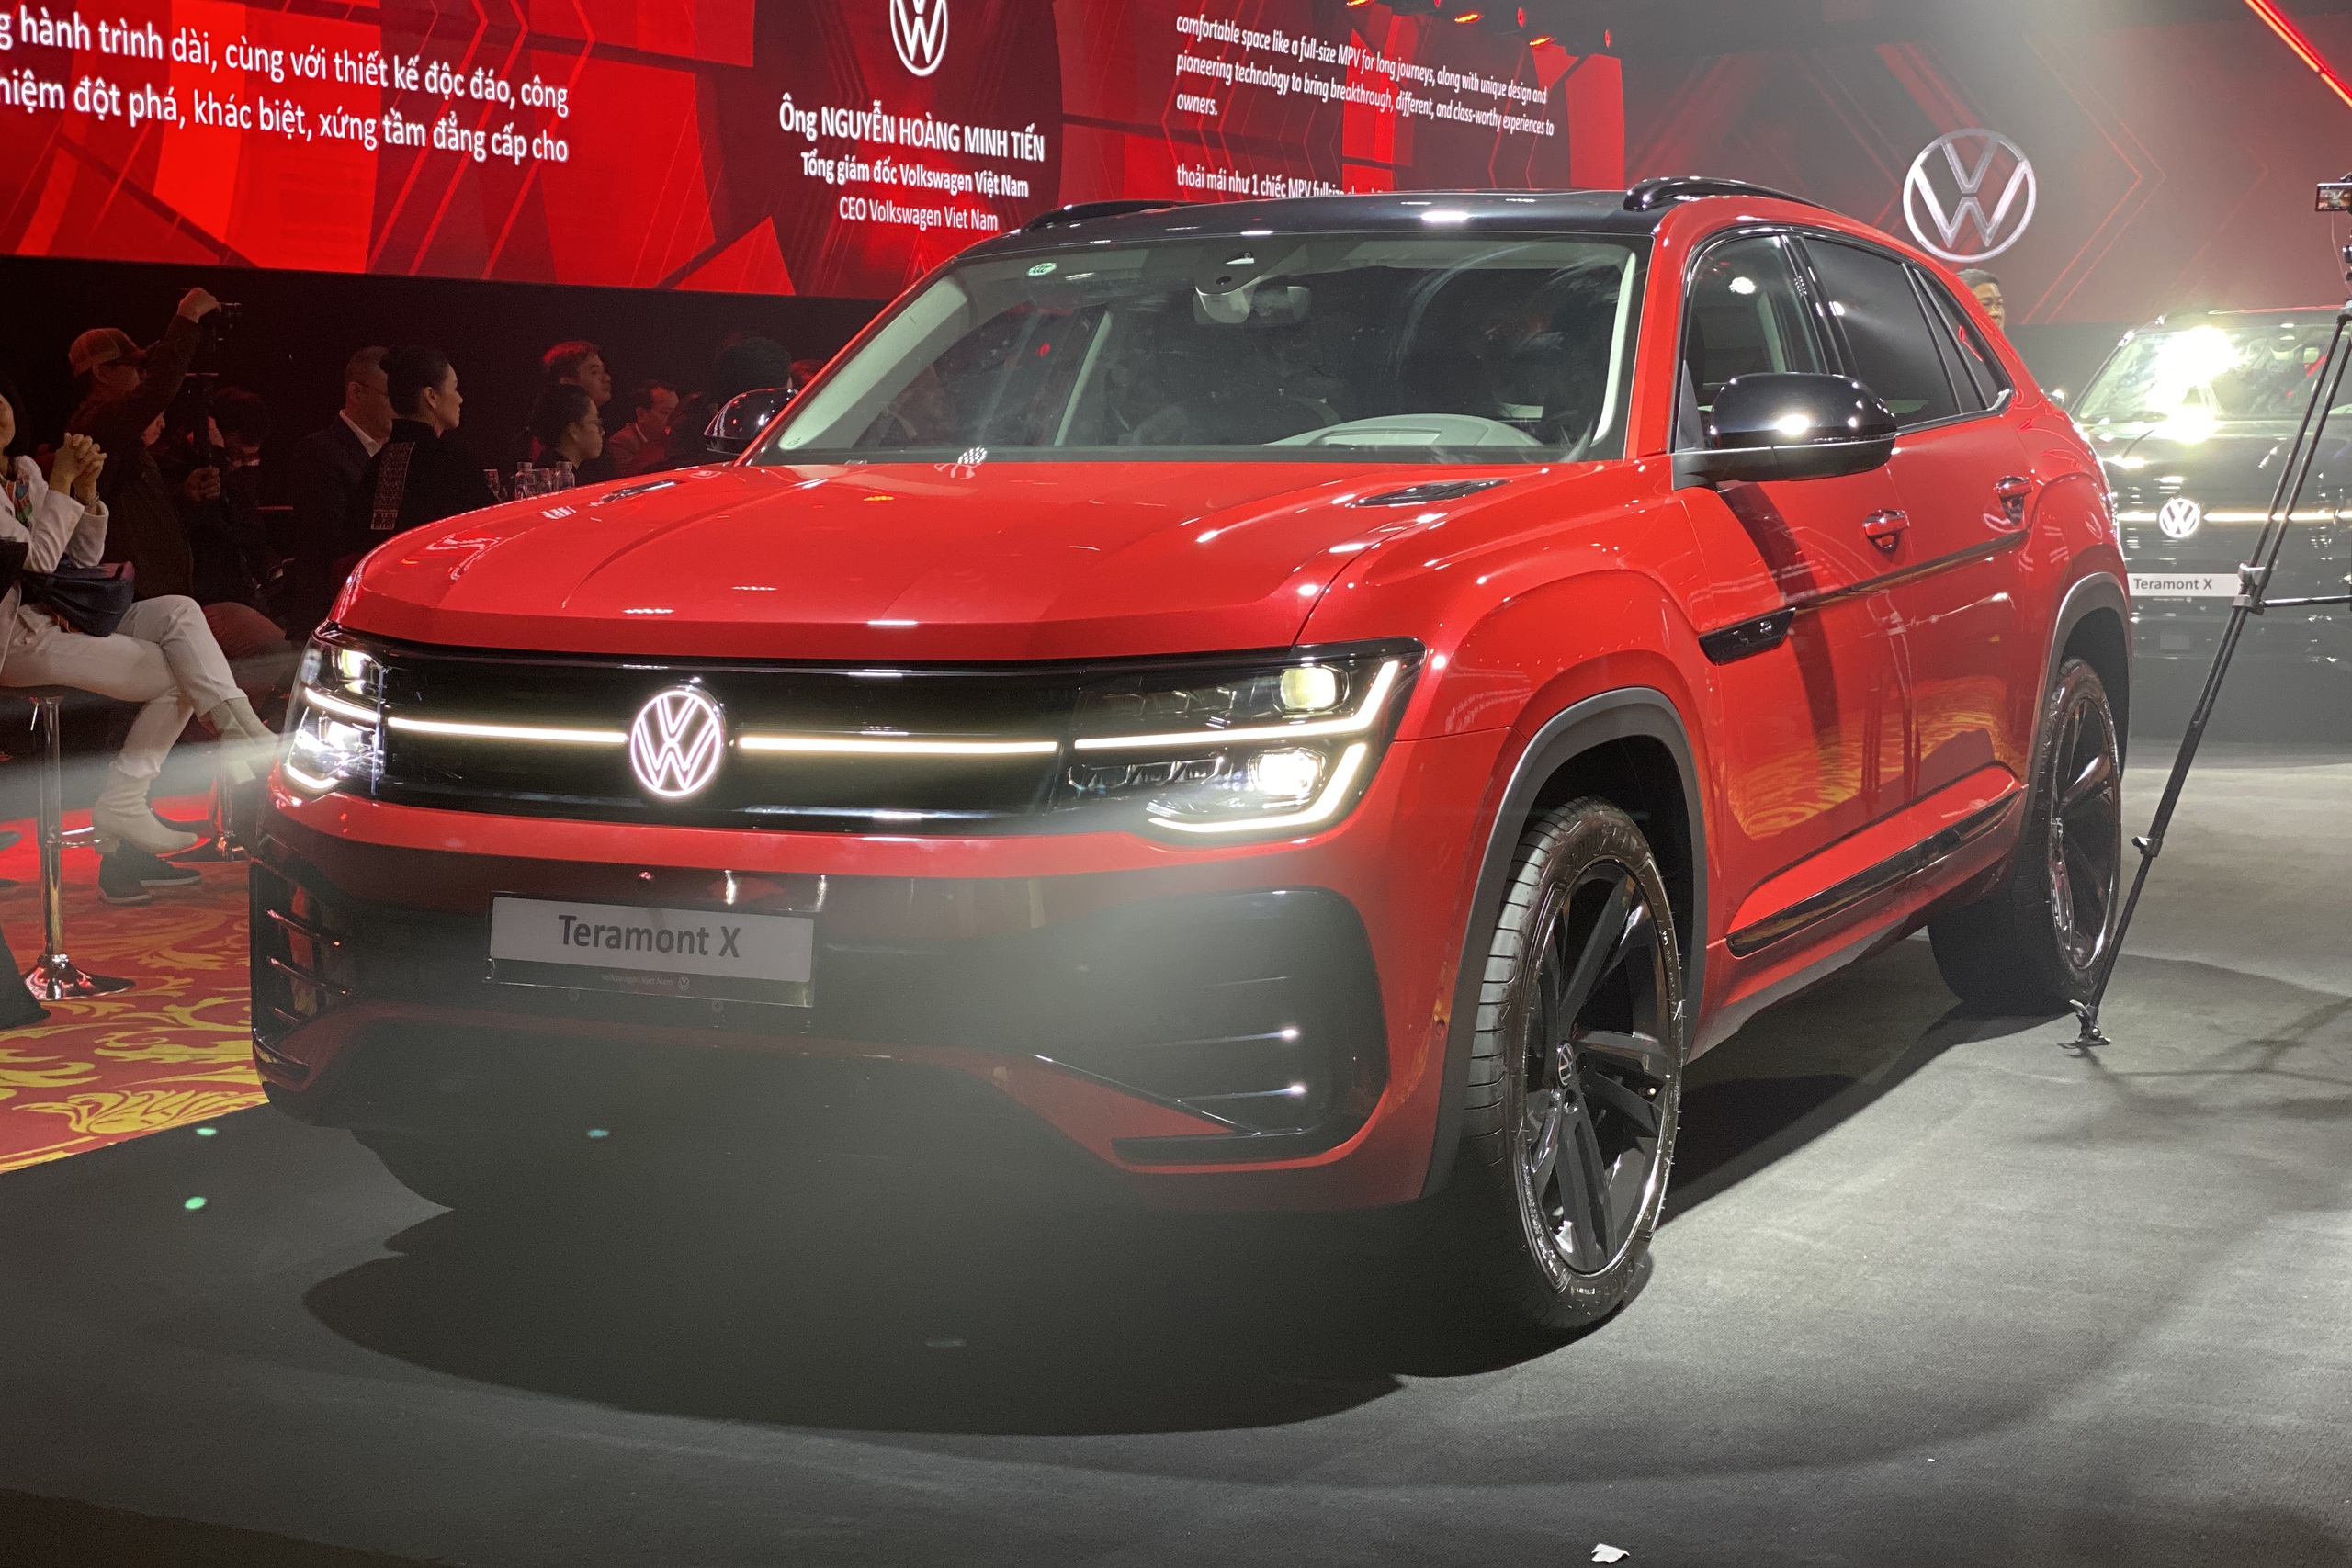 VW Teramont X ra mắt Việt Nam: Giá từ 1,998 tỷ, 2 phiên bản, nhiều công nghệ, đấu Explorer bằng giá rẻ hơn đúng 1 triệu đồng - ảnh 4